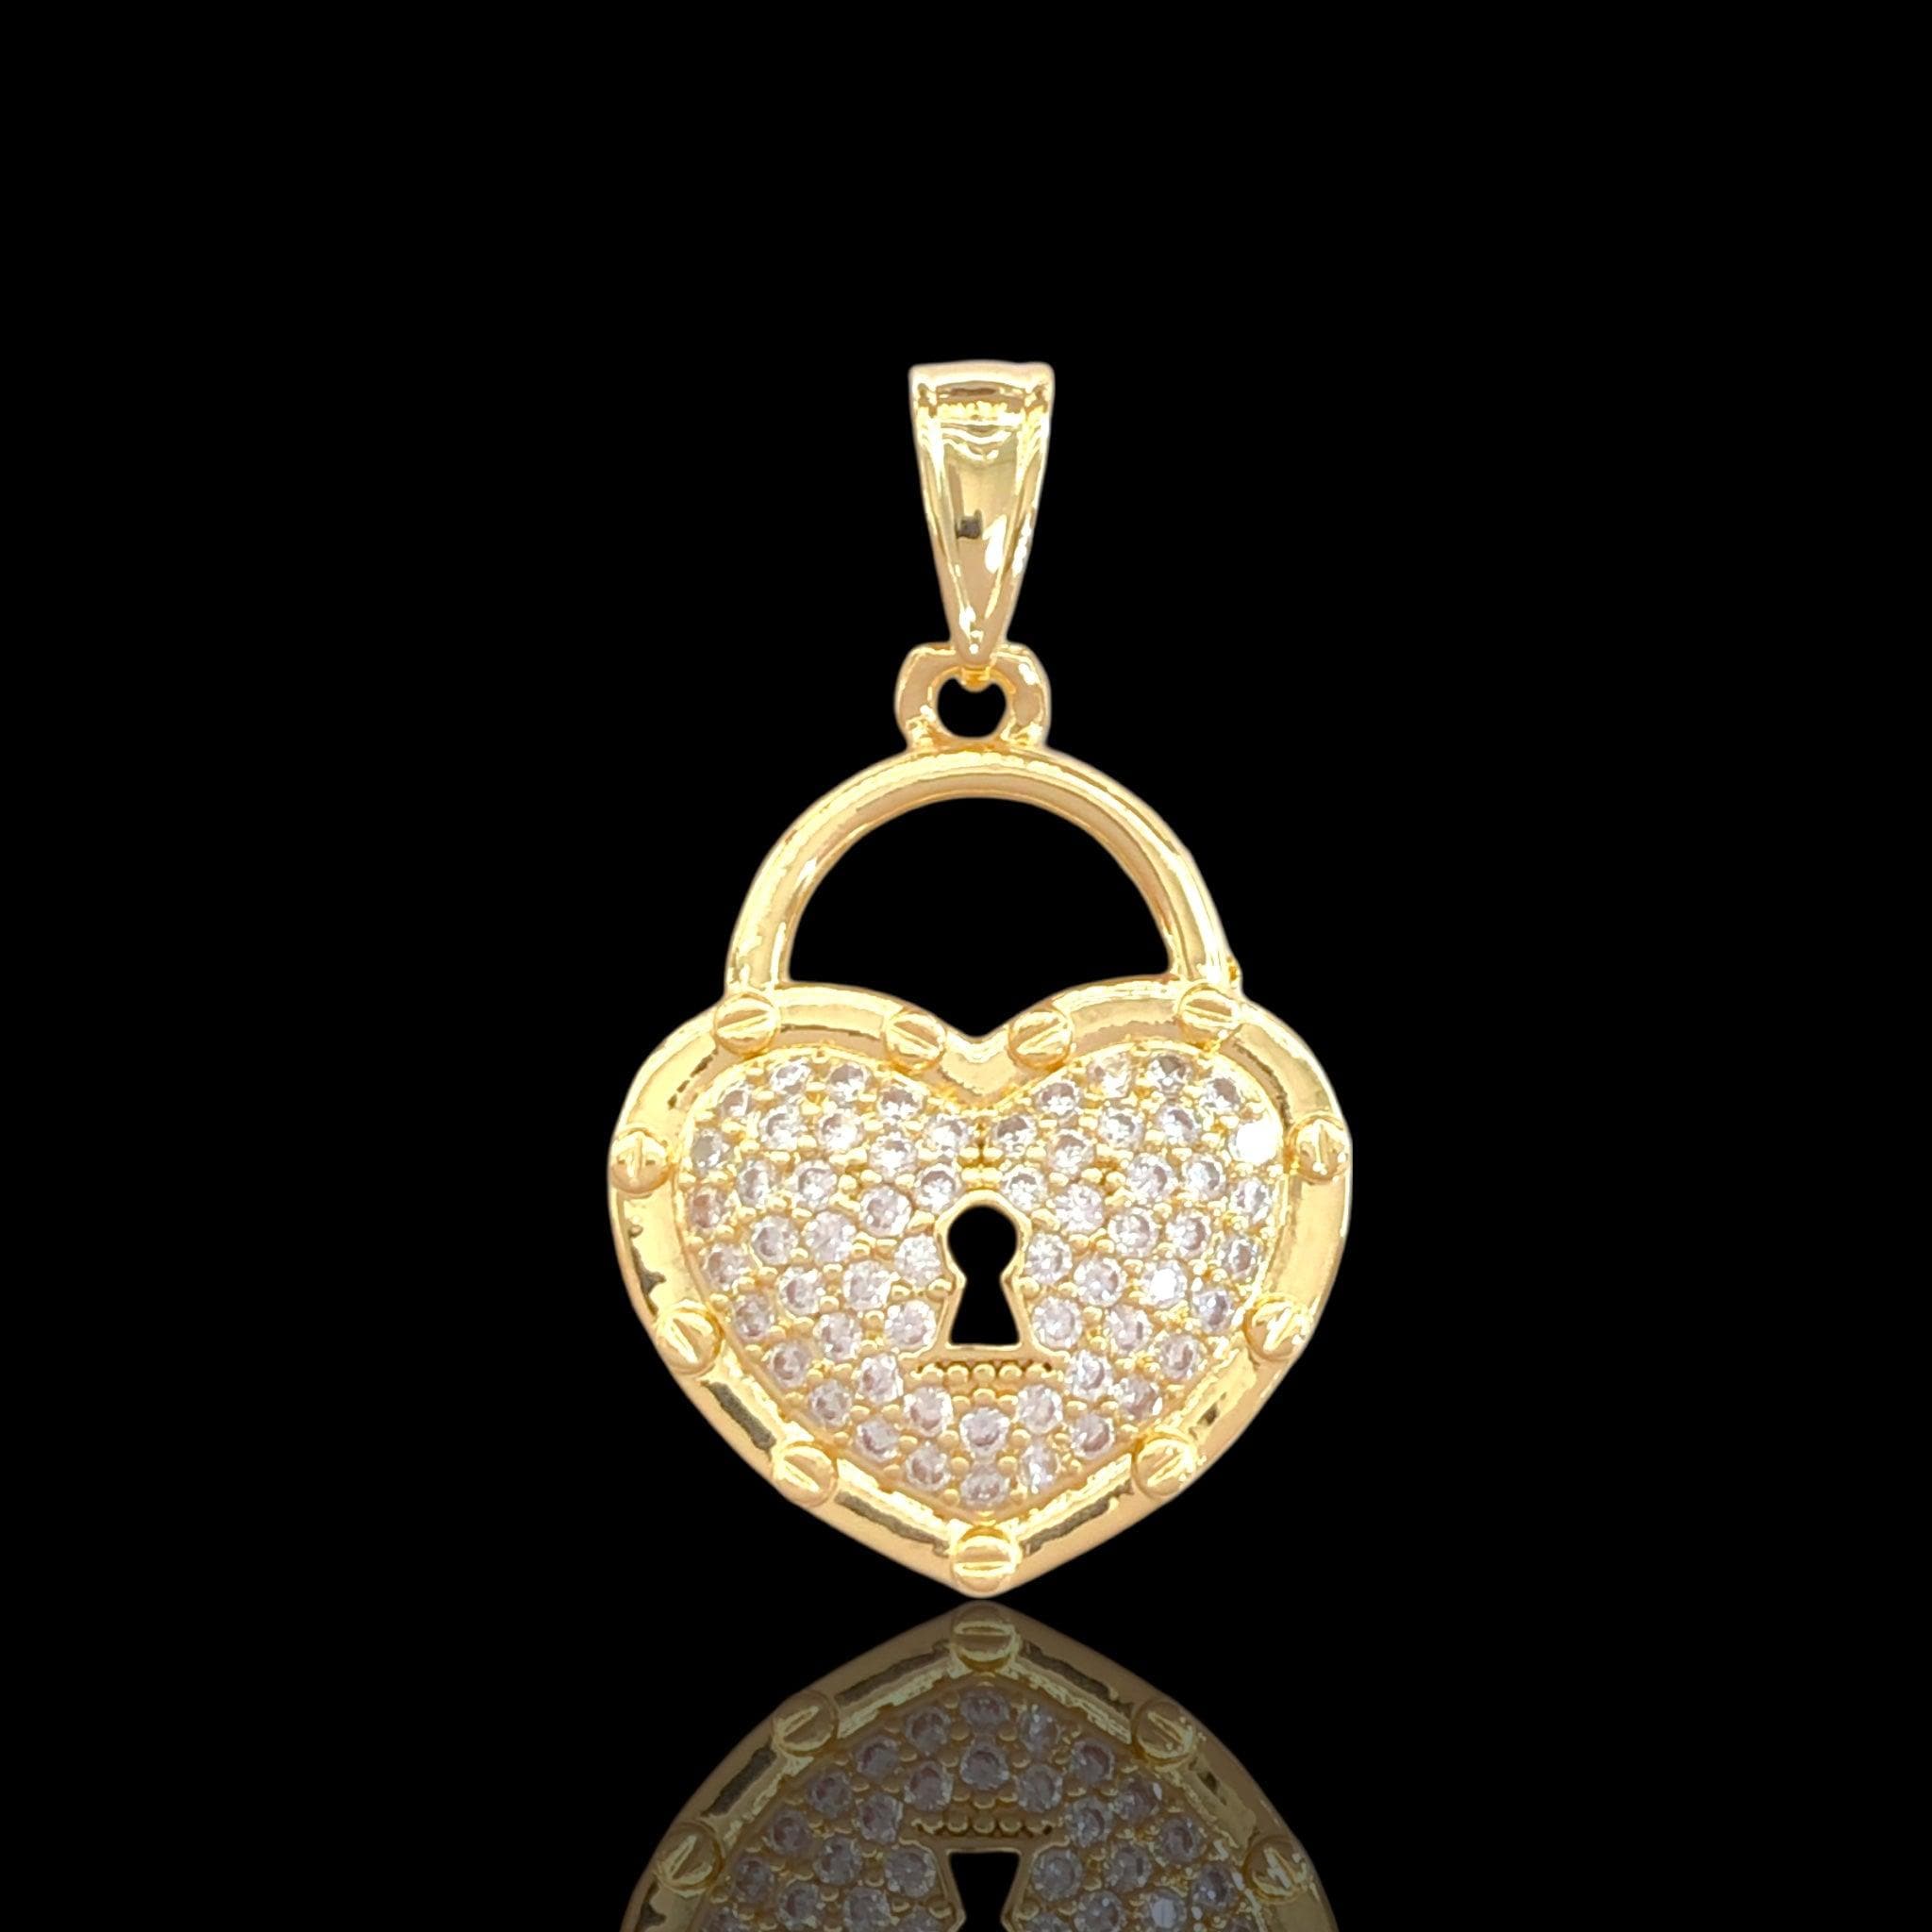 OLP 0497 18K Gold Filled Victorian Heart Locket Pendant- kuania oro laminado